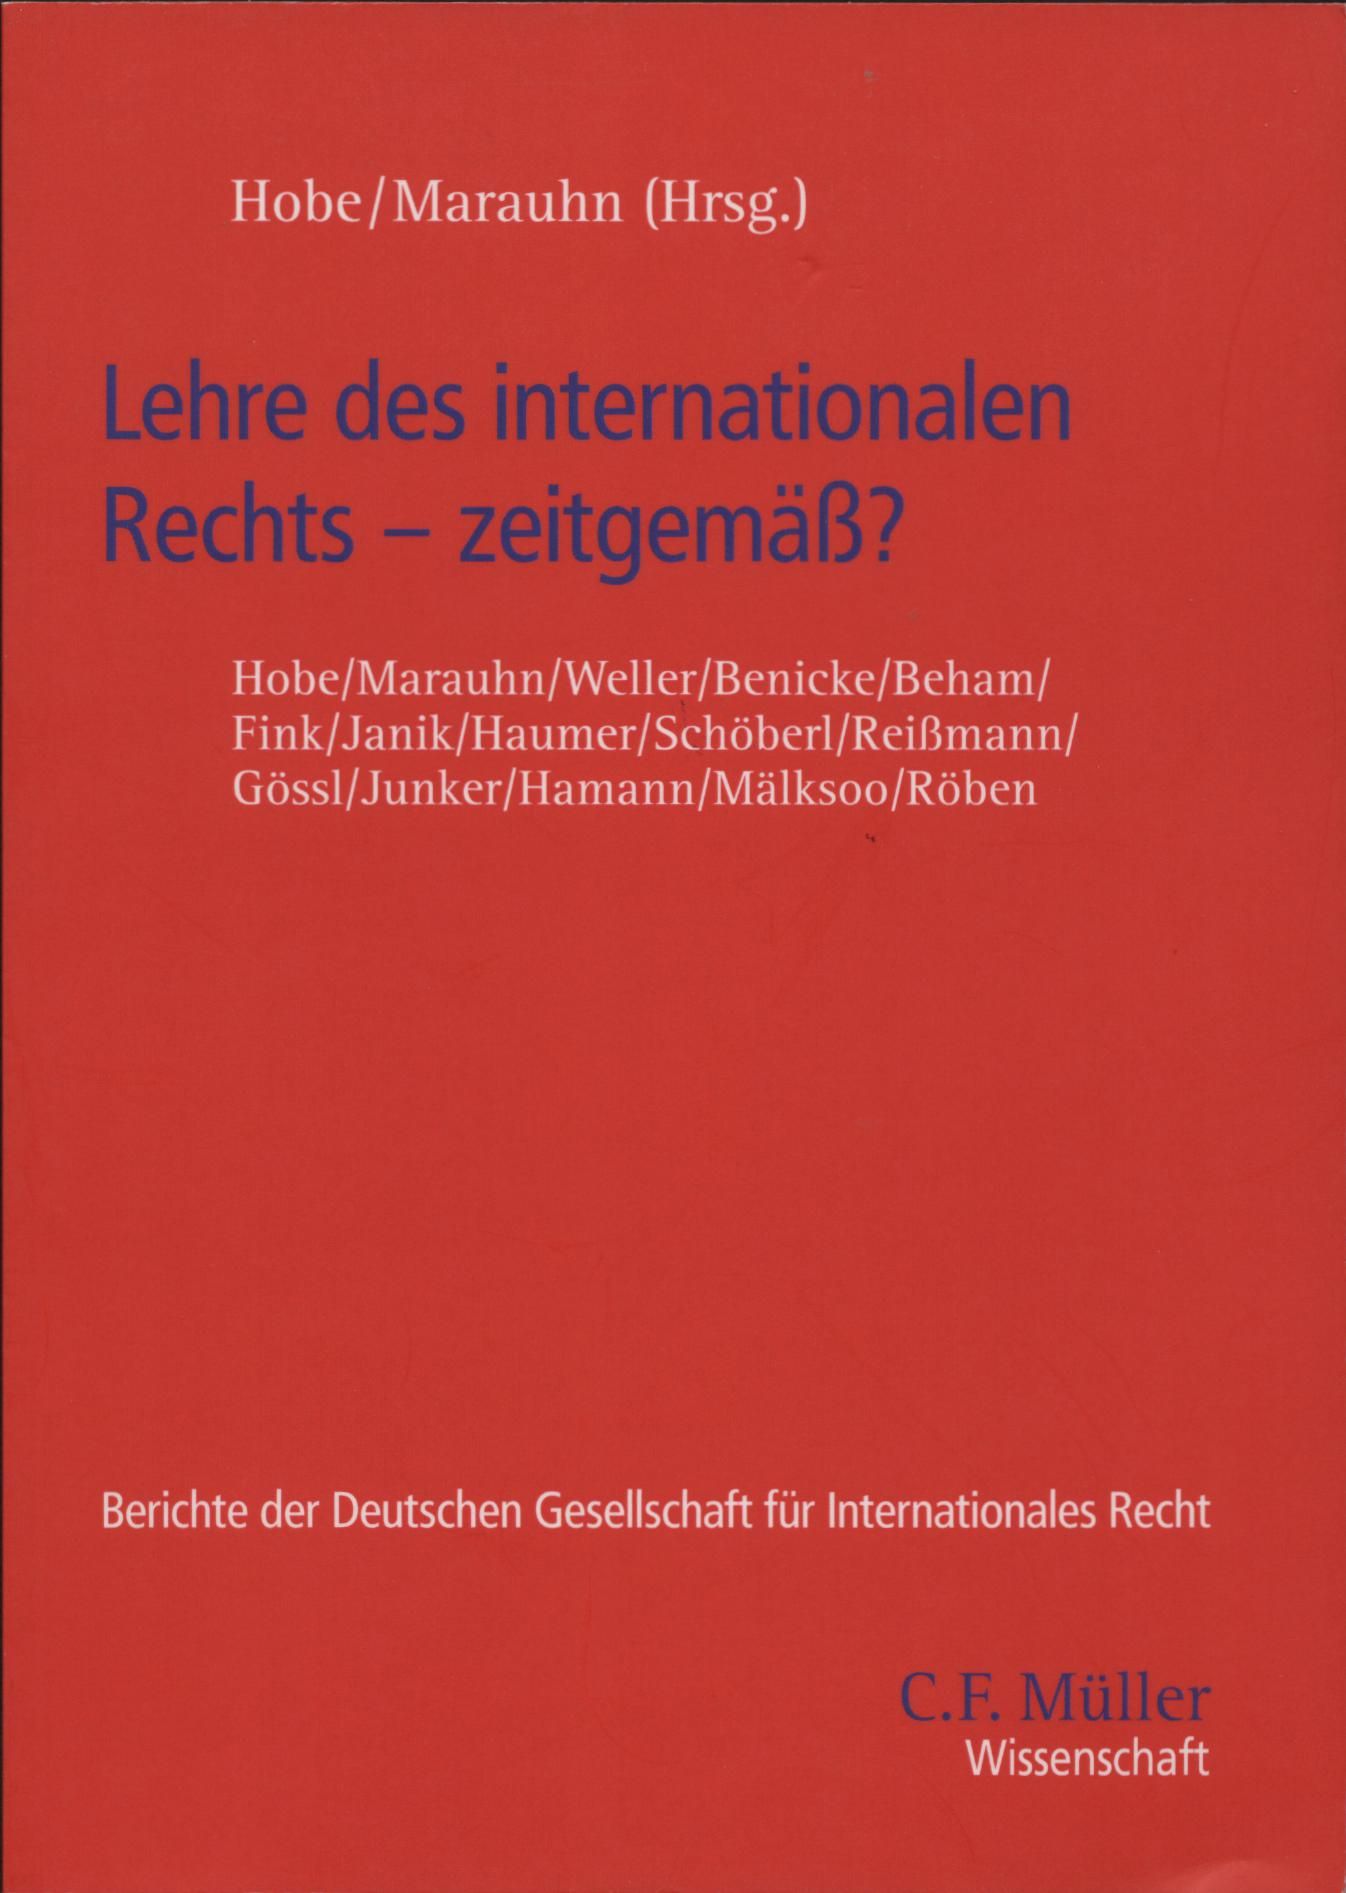 Lehre des internationalen Rechts - zeitgemäß? - Hobe, Stephan und Thilo Marauhn